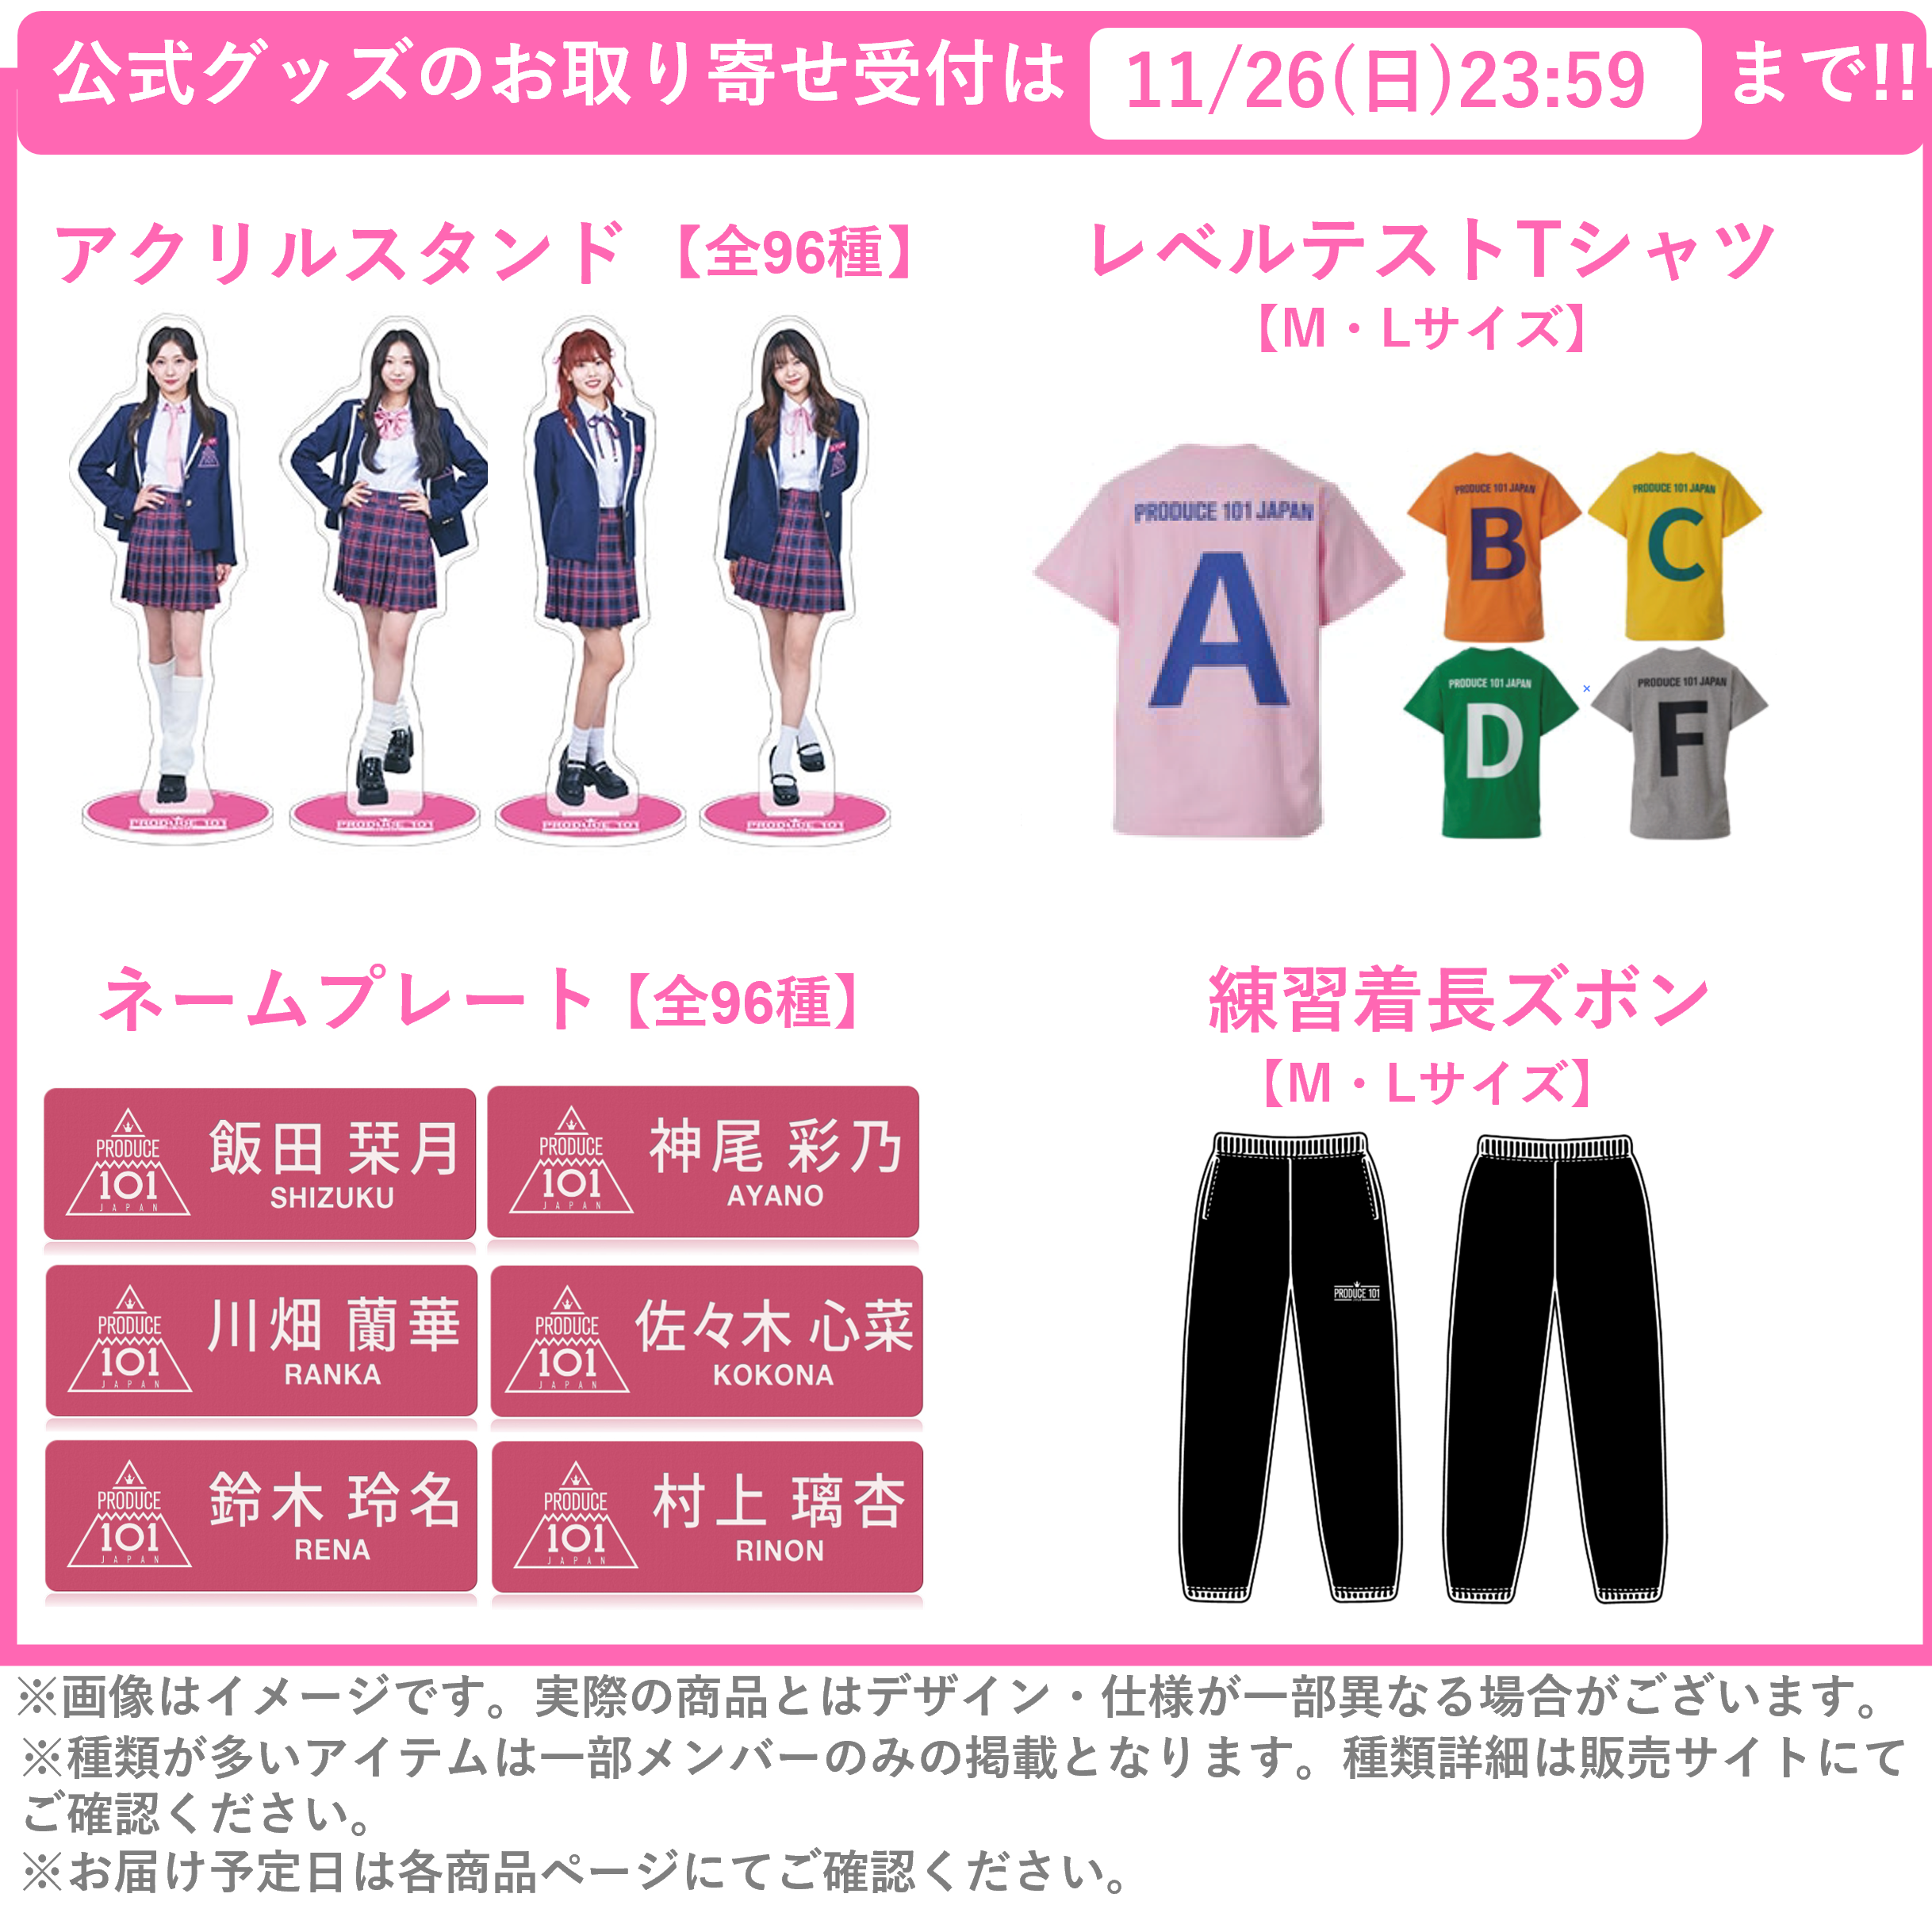 PRODUCE 101 JAPAN THE GIRLS 公式グッズお取り寄せ受付〆切のお知らせ